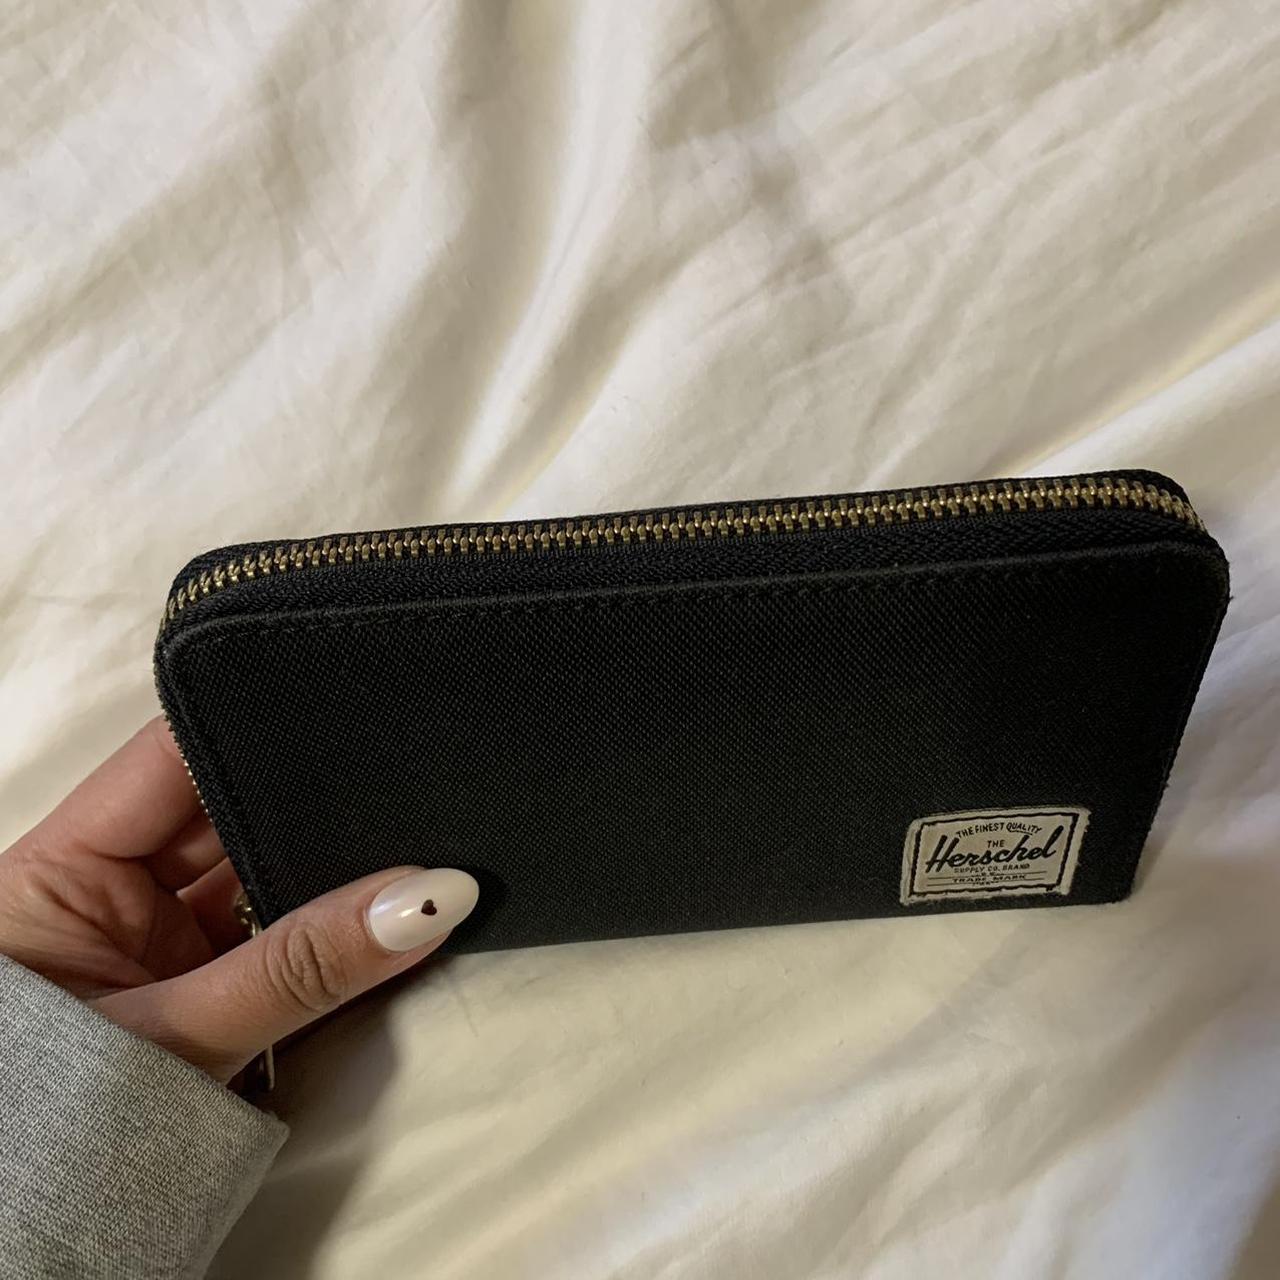 Herschel Women's Black Wallet-purses (2)